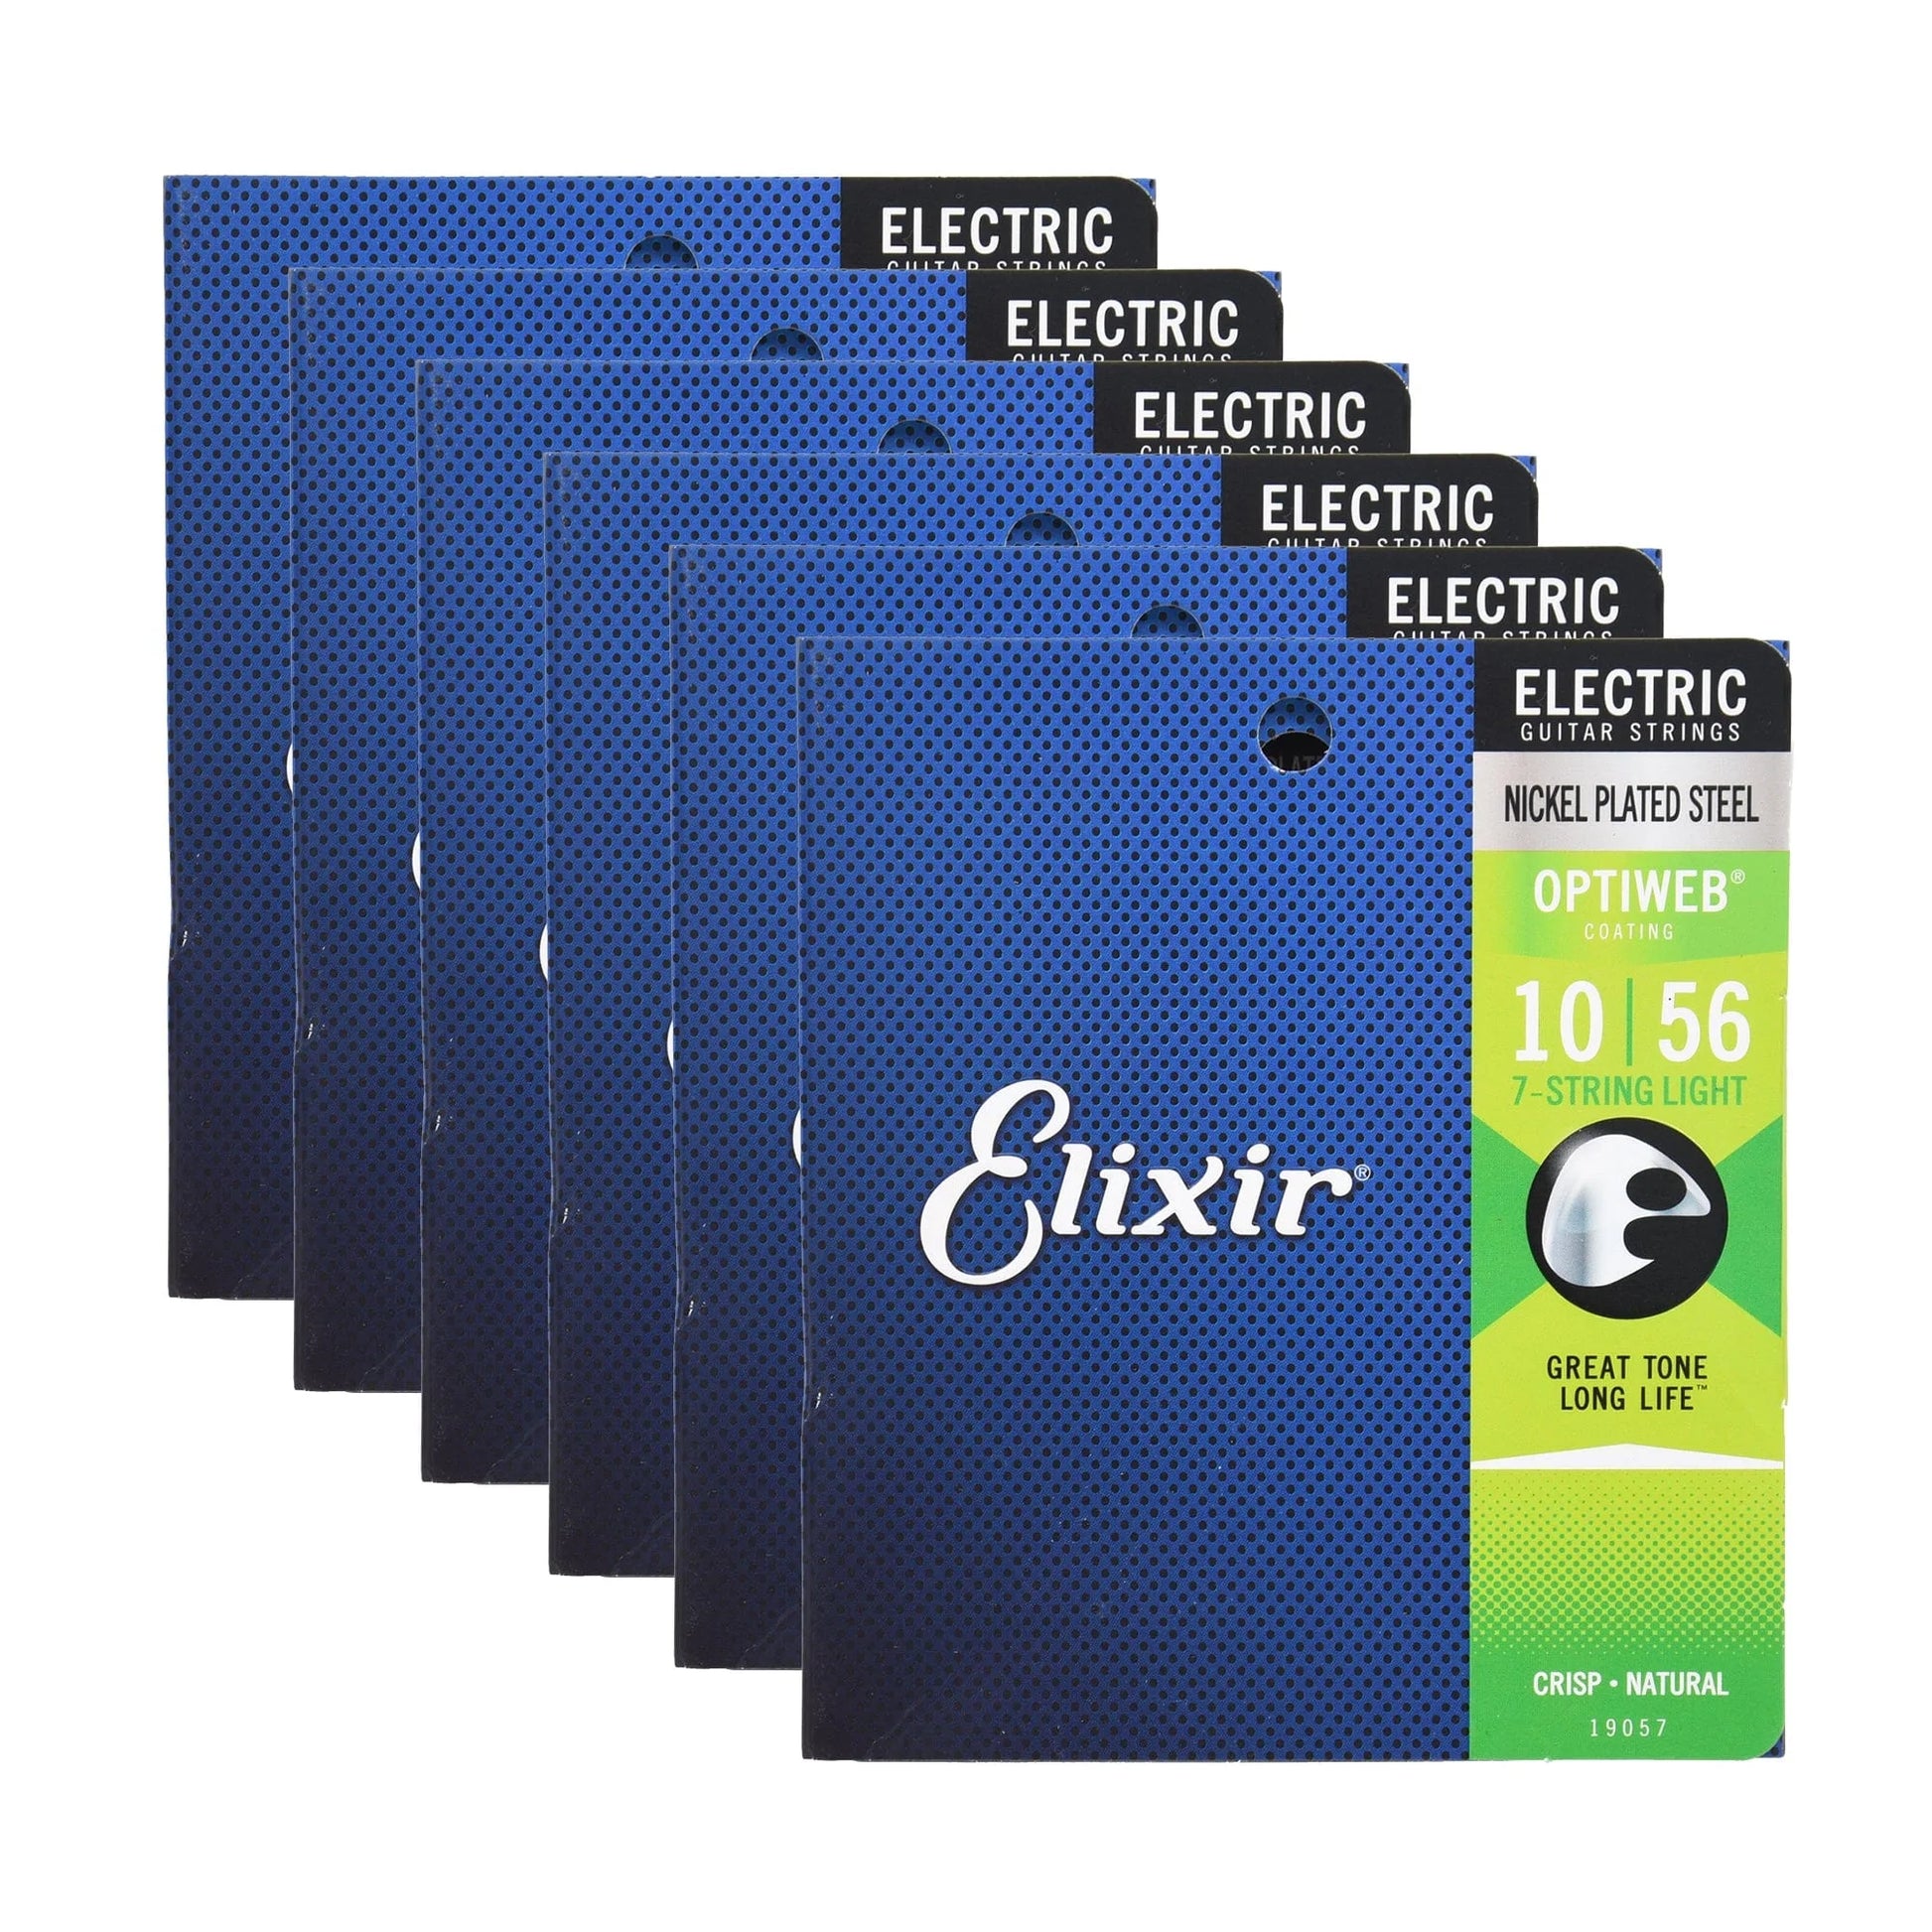 Elixir 19057 Electric Optiweb 7-String Light 10-56 6 Pack Bundle Accessories / Strings / Guitar Strings